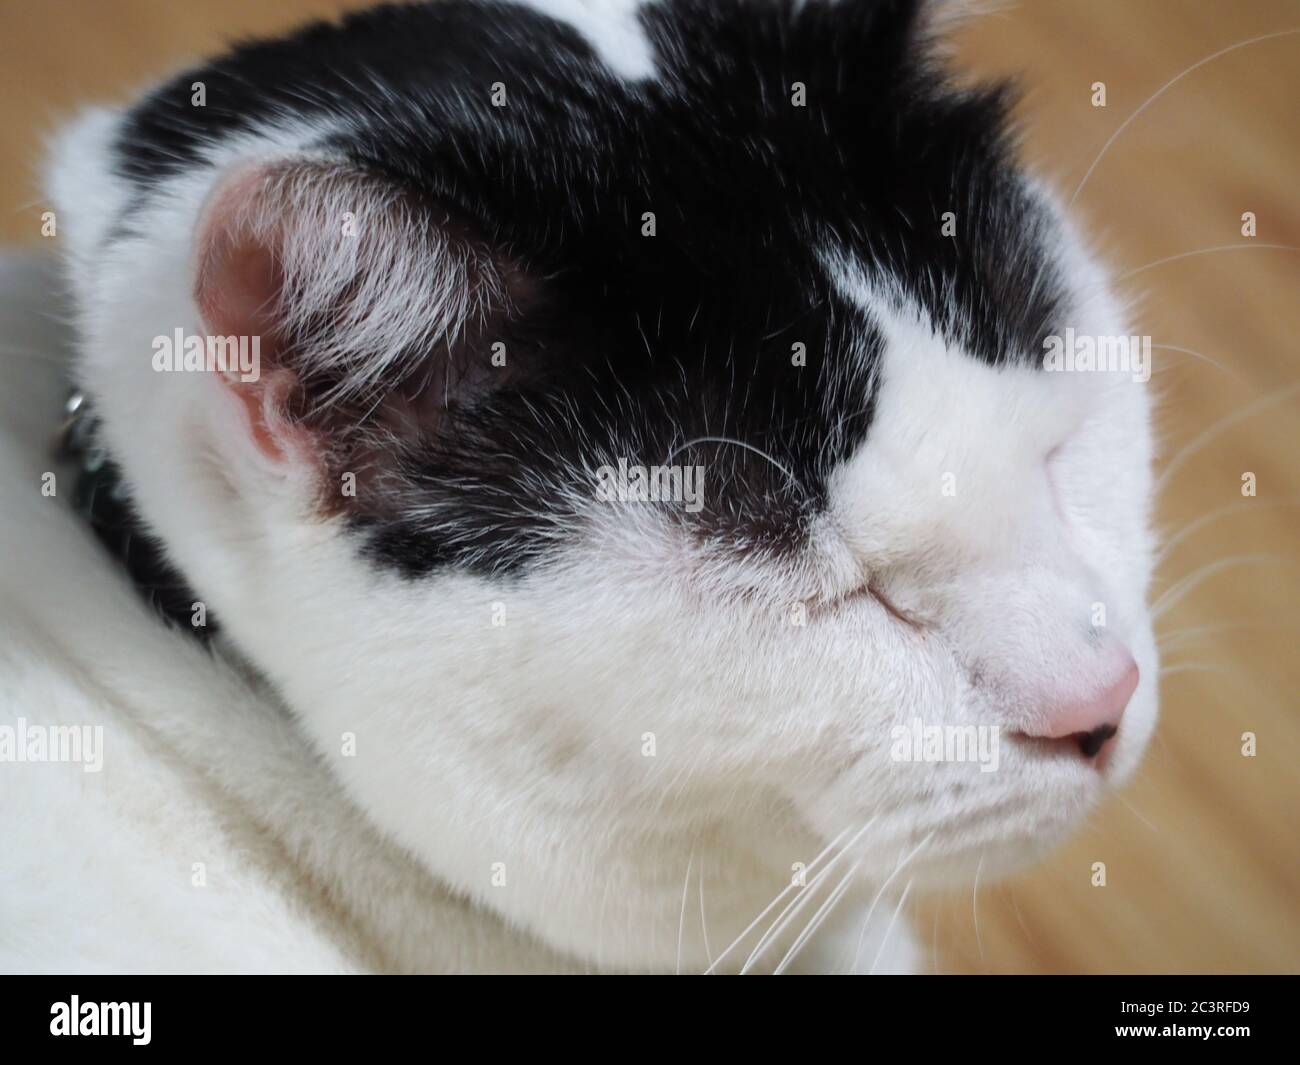 Un chat blanc paisible avec des marques noires Banque D'Images